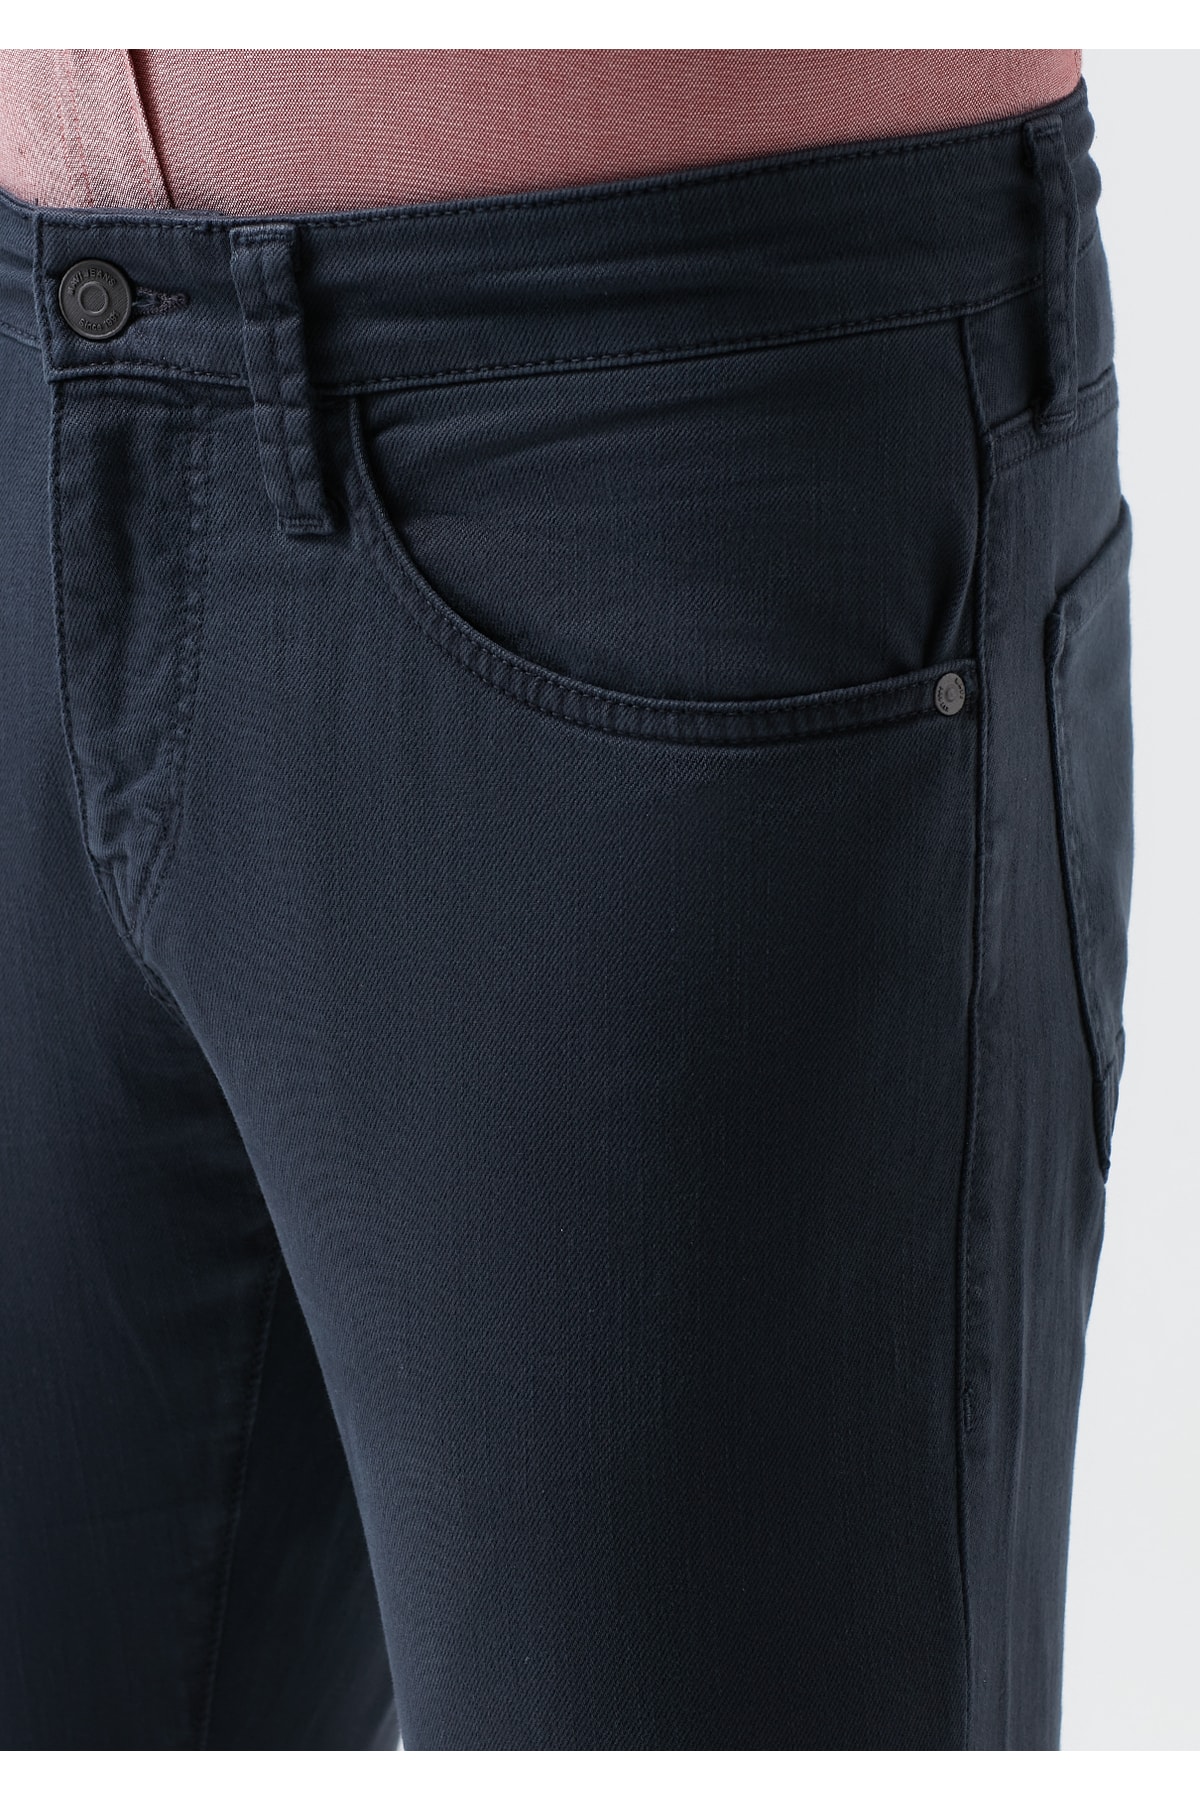 Mavi Jeans Marcus Comfort Pantolon (0035132609)